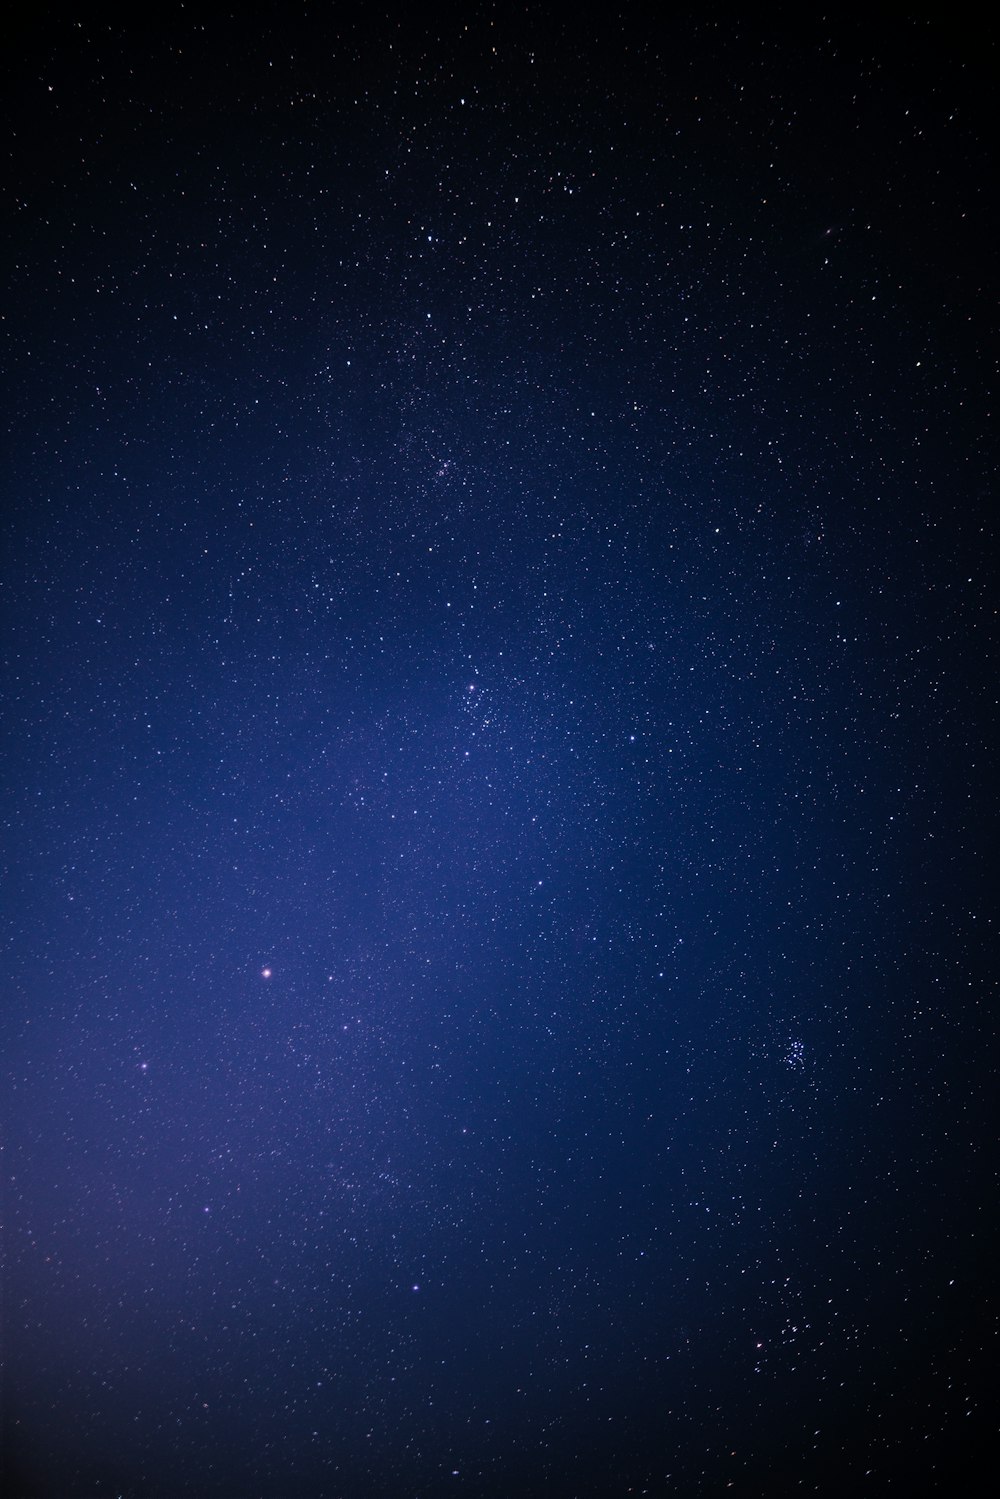 Thưởng thức hình ảnh đêm bầu trời xanh đậm miễn phí để cảm nhận những điều kỳ diệu của vũ trụ. Đứng dưới ánh sao lấp lánh trên nền trời xanh thẳm, bạn sẽ ngỡ như được đưa đến với những vì sao xa xôi, tạo nên một không gian rộng lớn và sự bình yên tràn đầy.